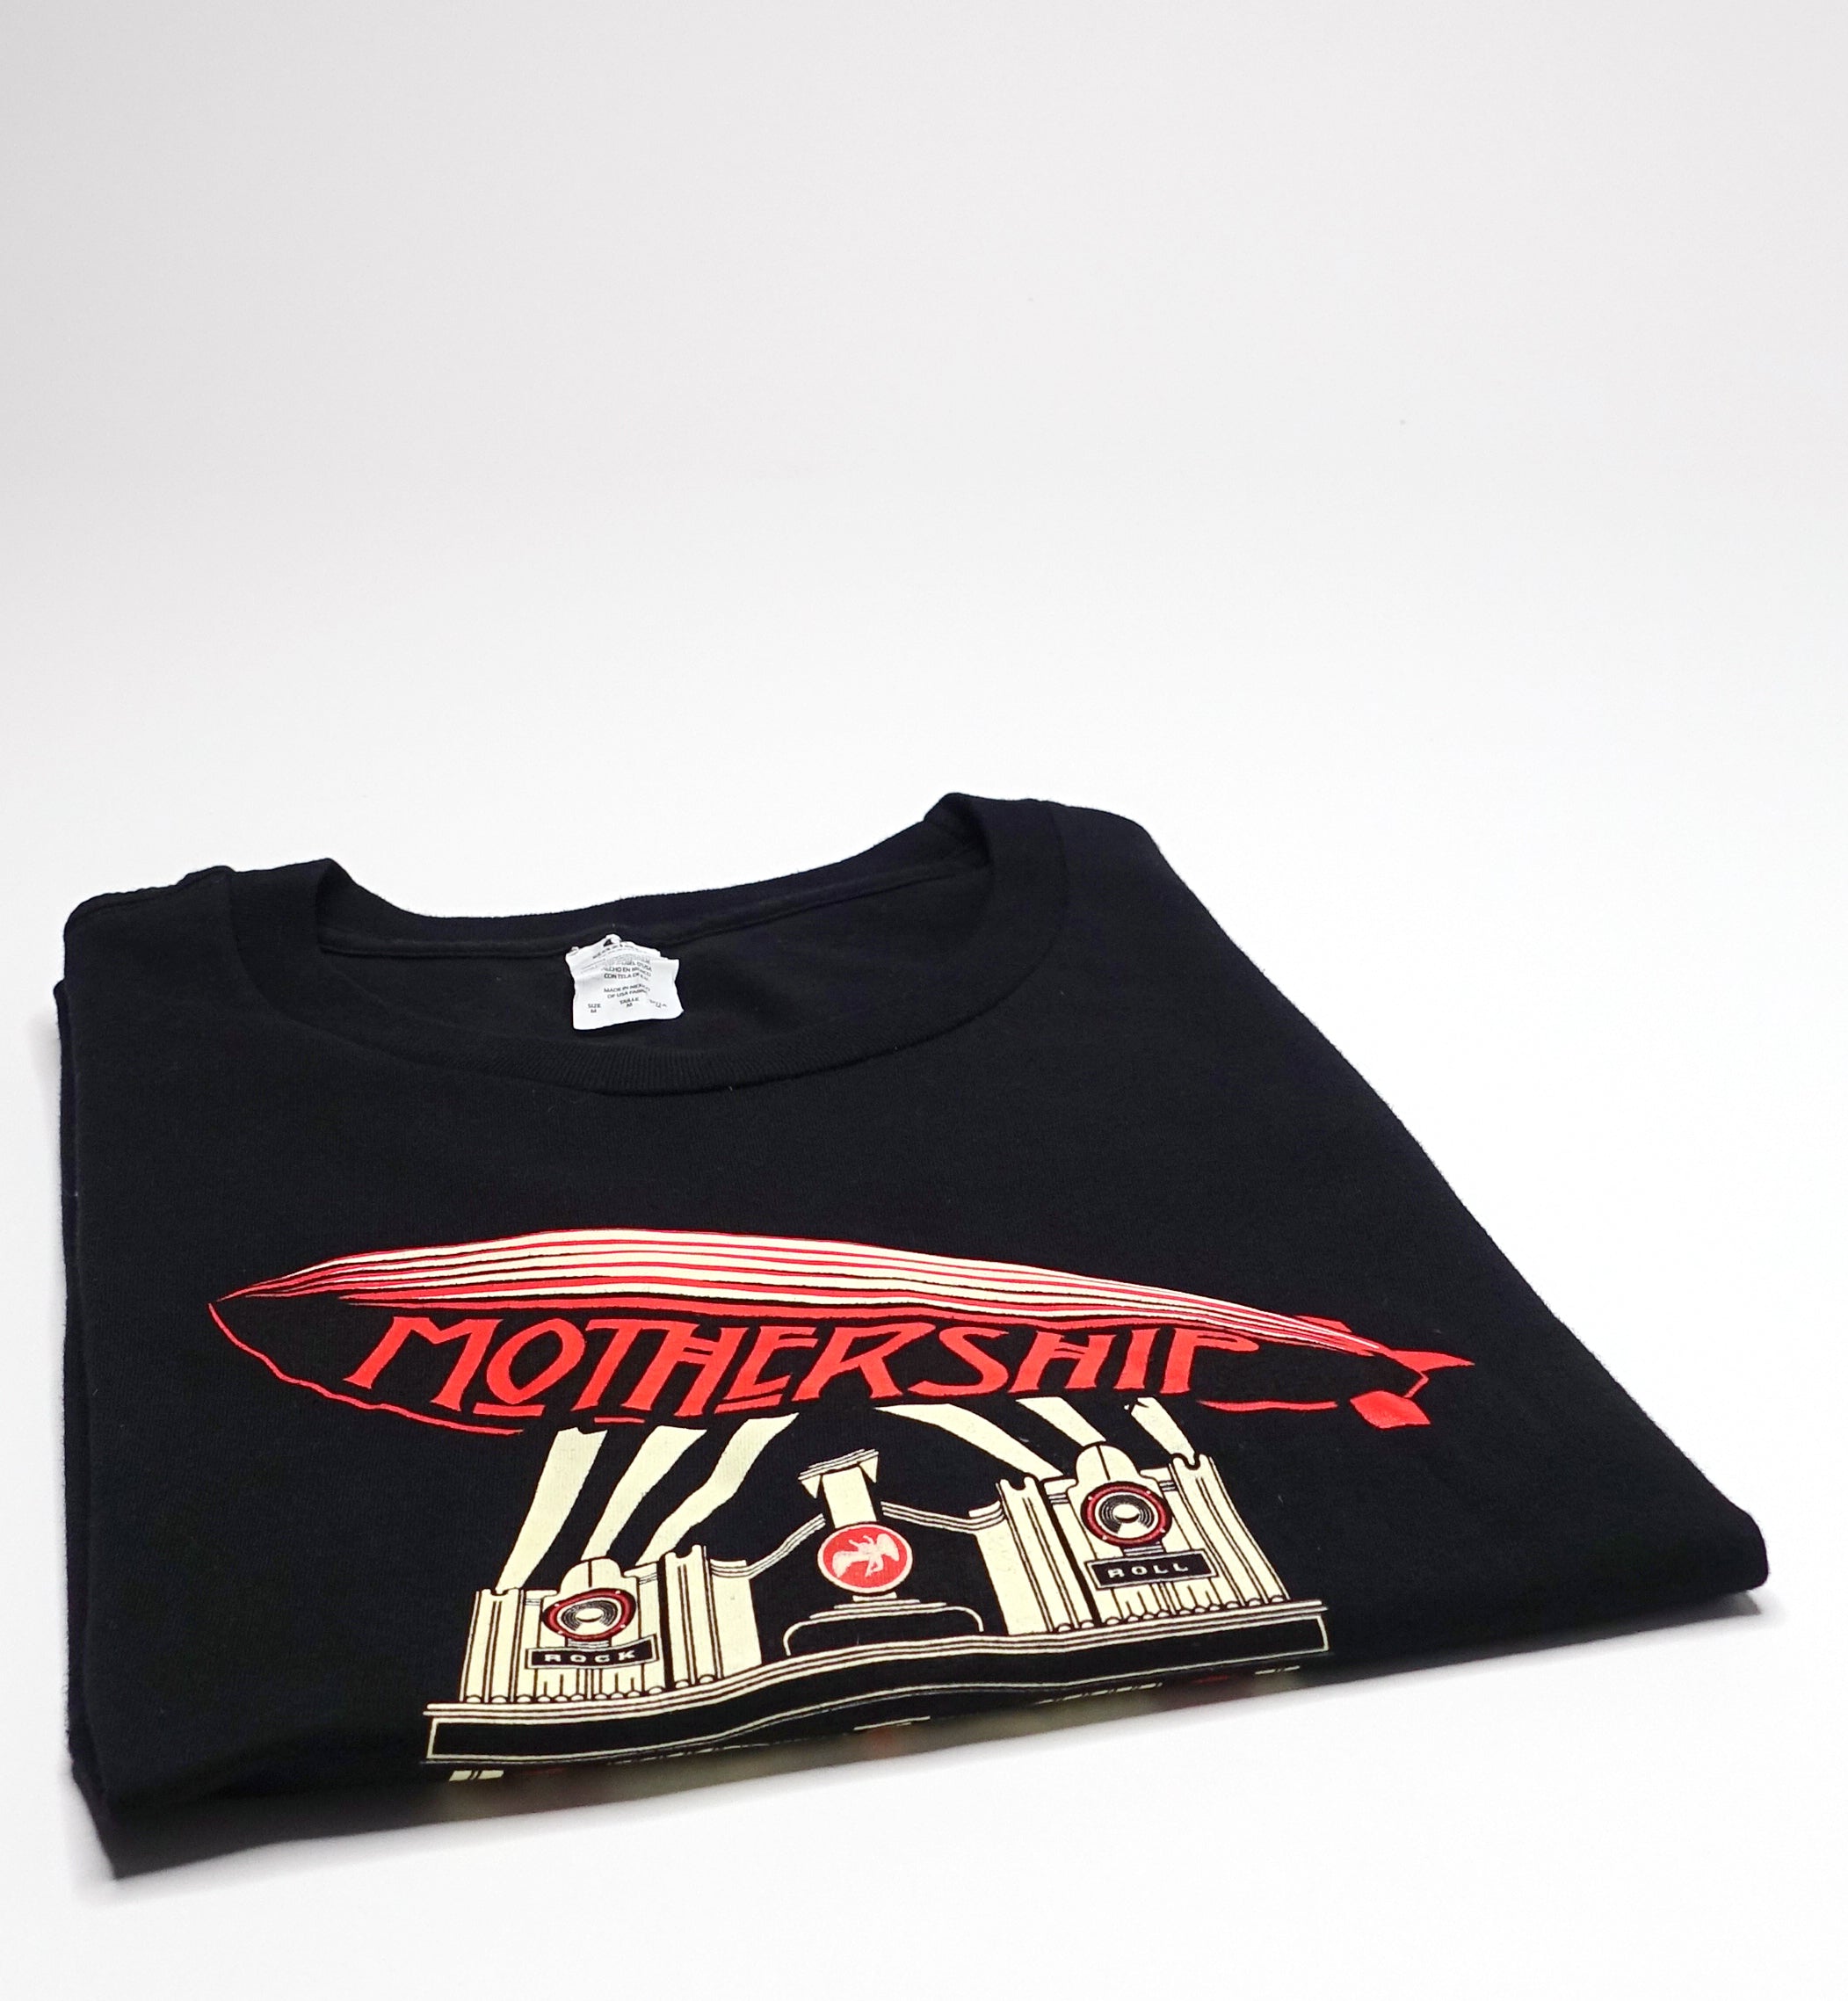 Led Zeppelin - Mothership 2007 Promo Shirt Size Medium